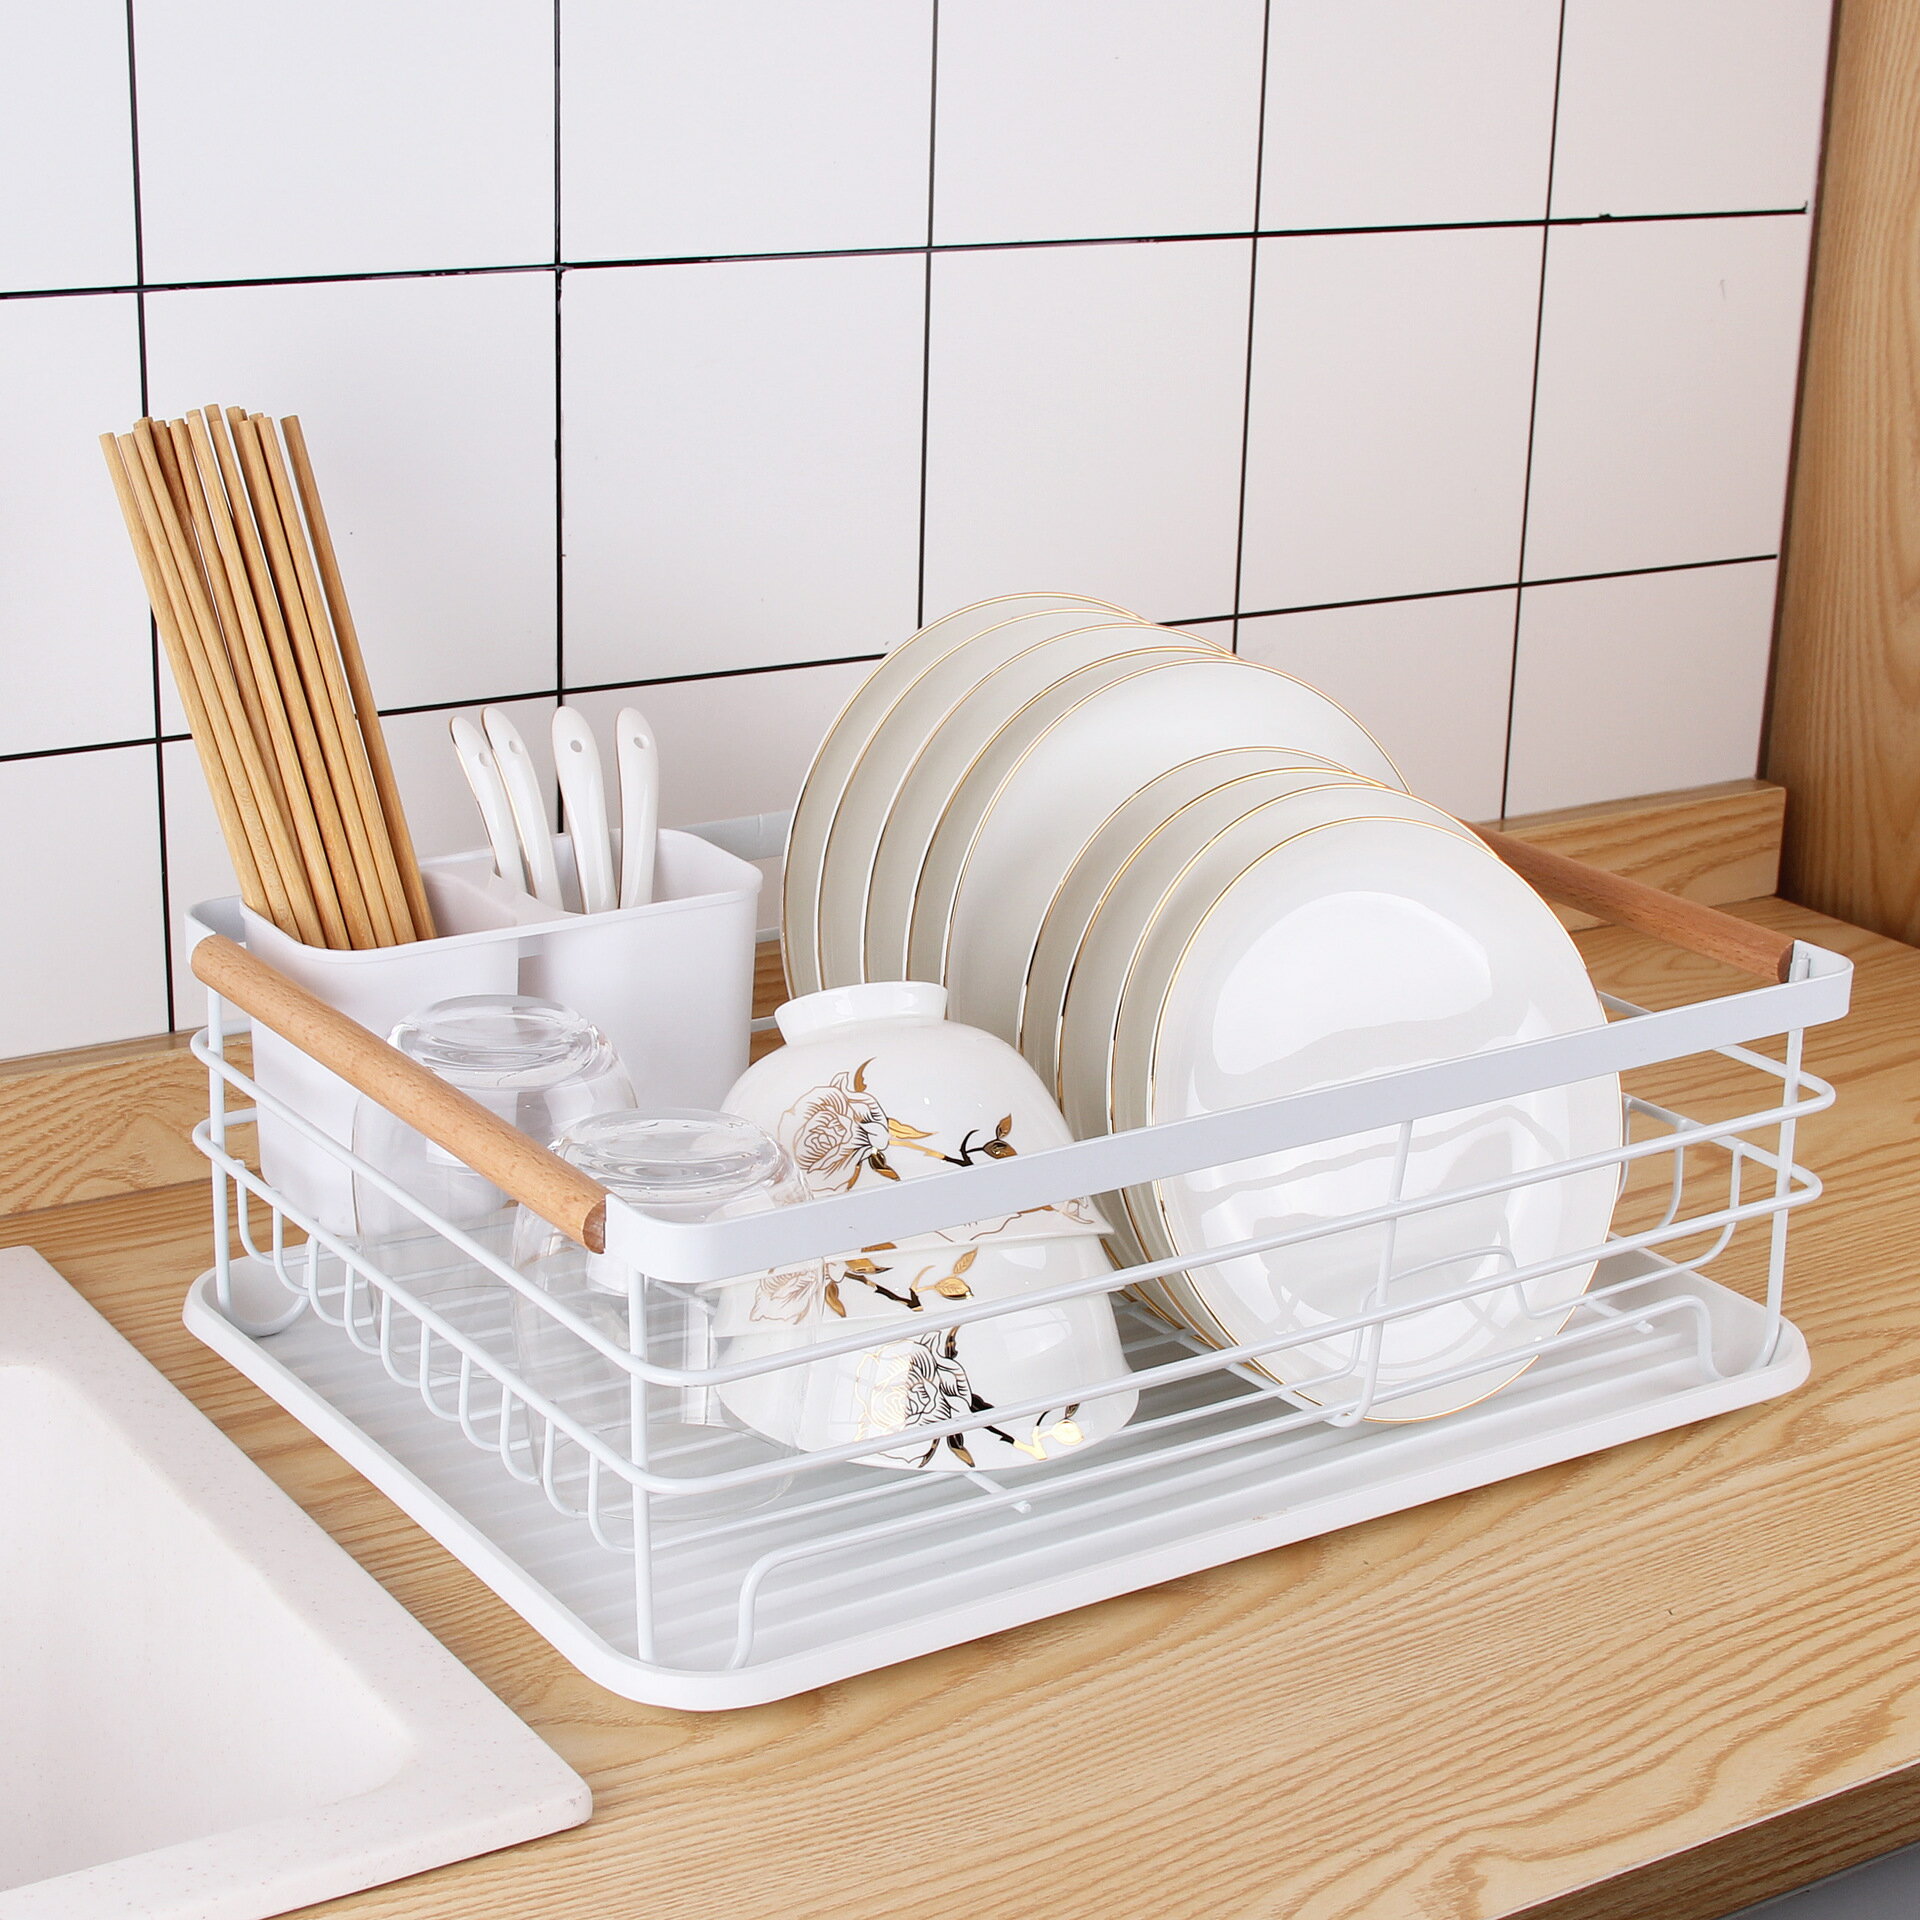 單層瀝水碗架 多功能廚房置物架餐具收納碗碟架